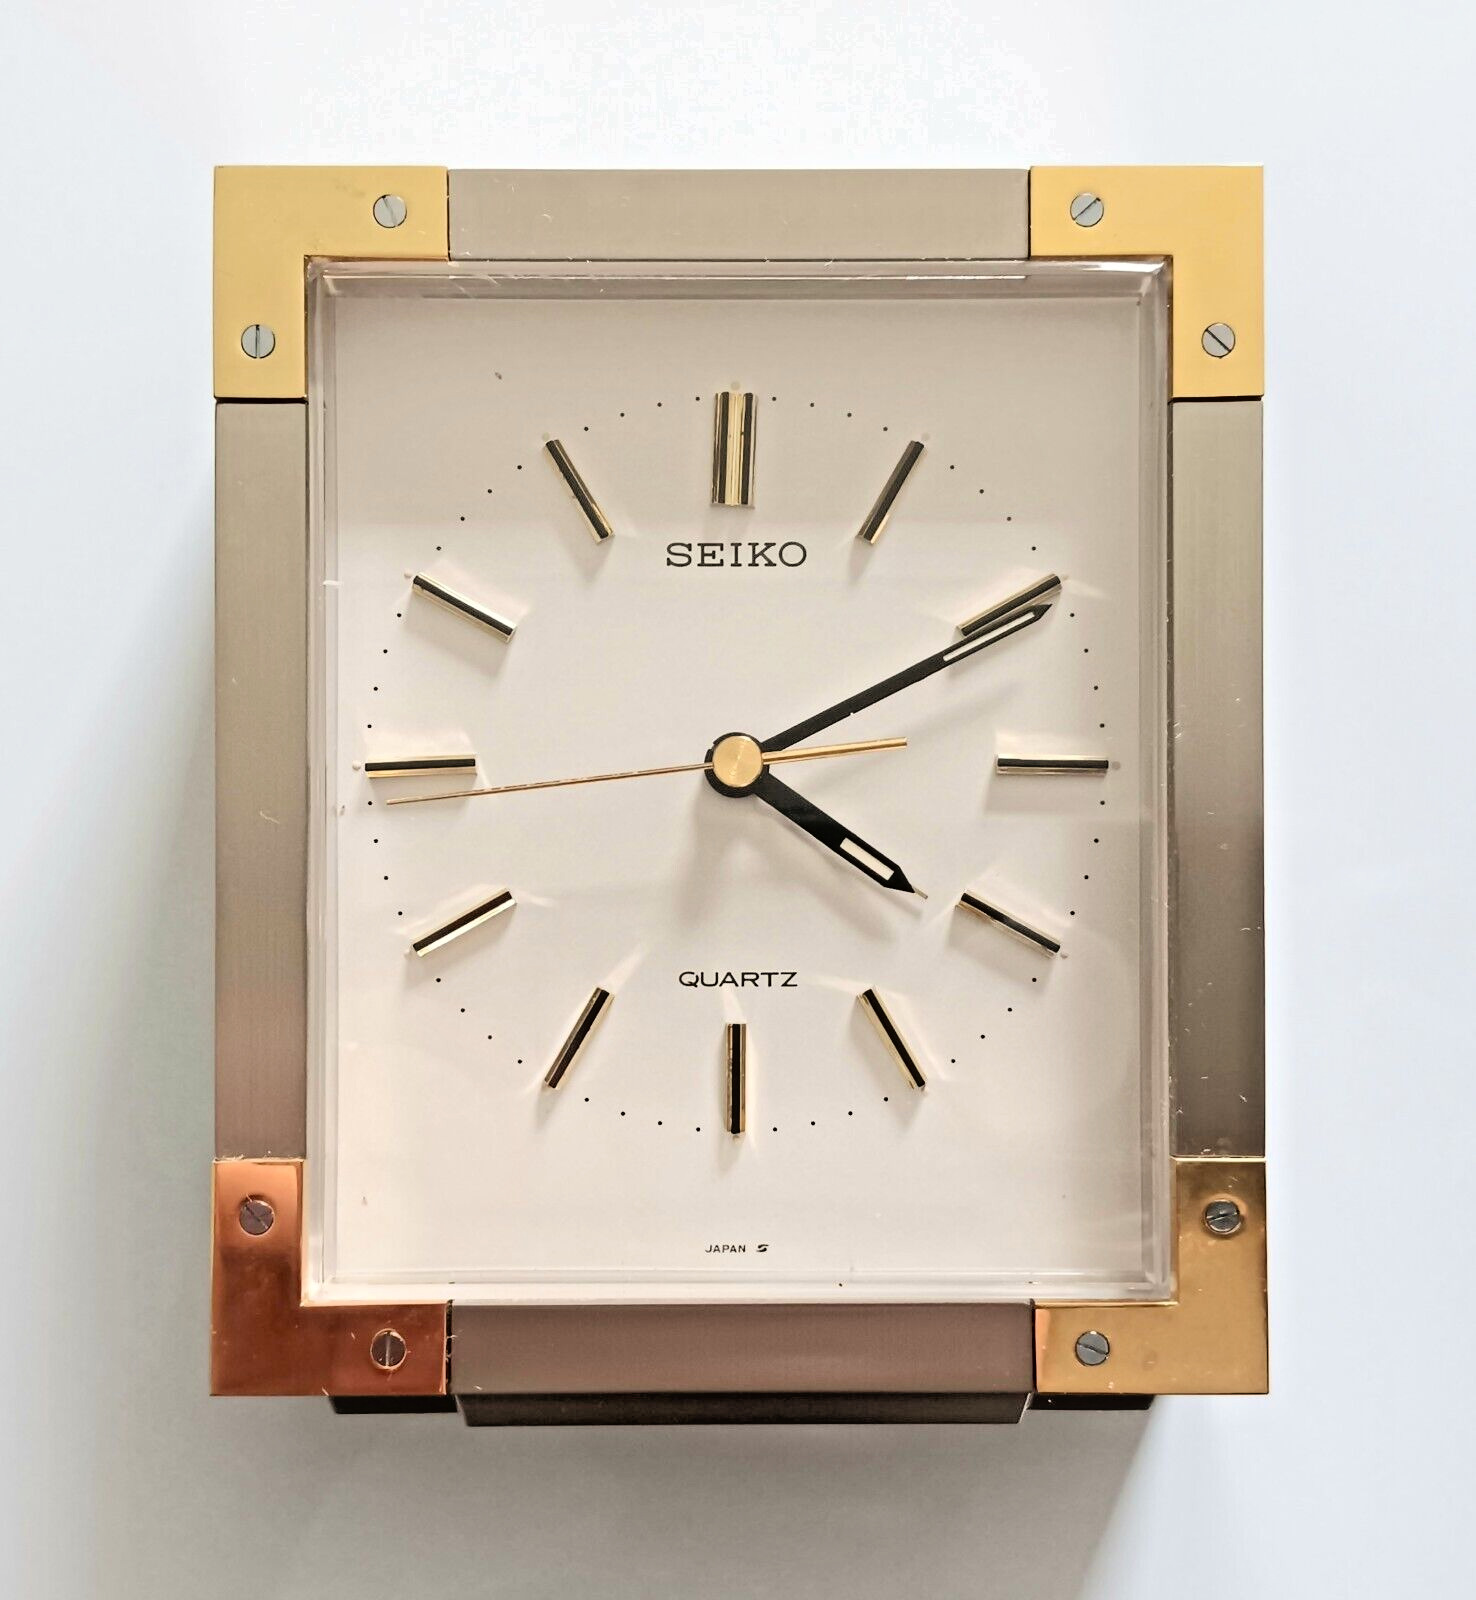 Seiko Quartz Alarm Clock